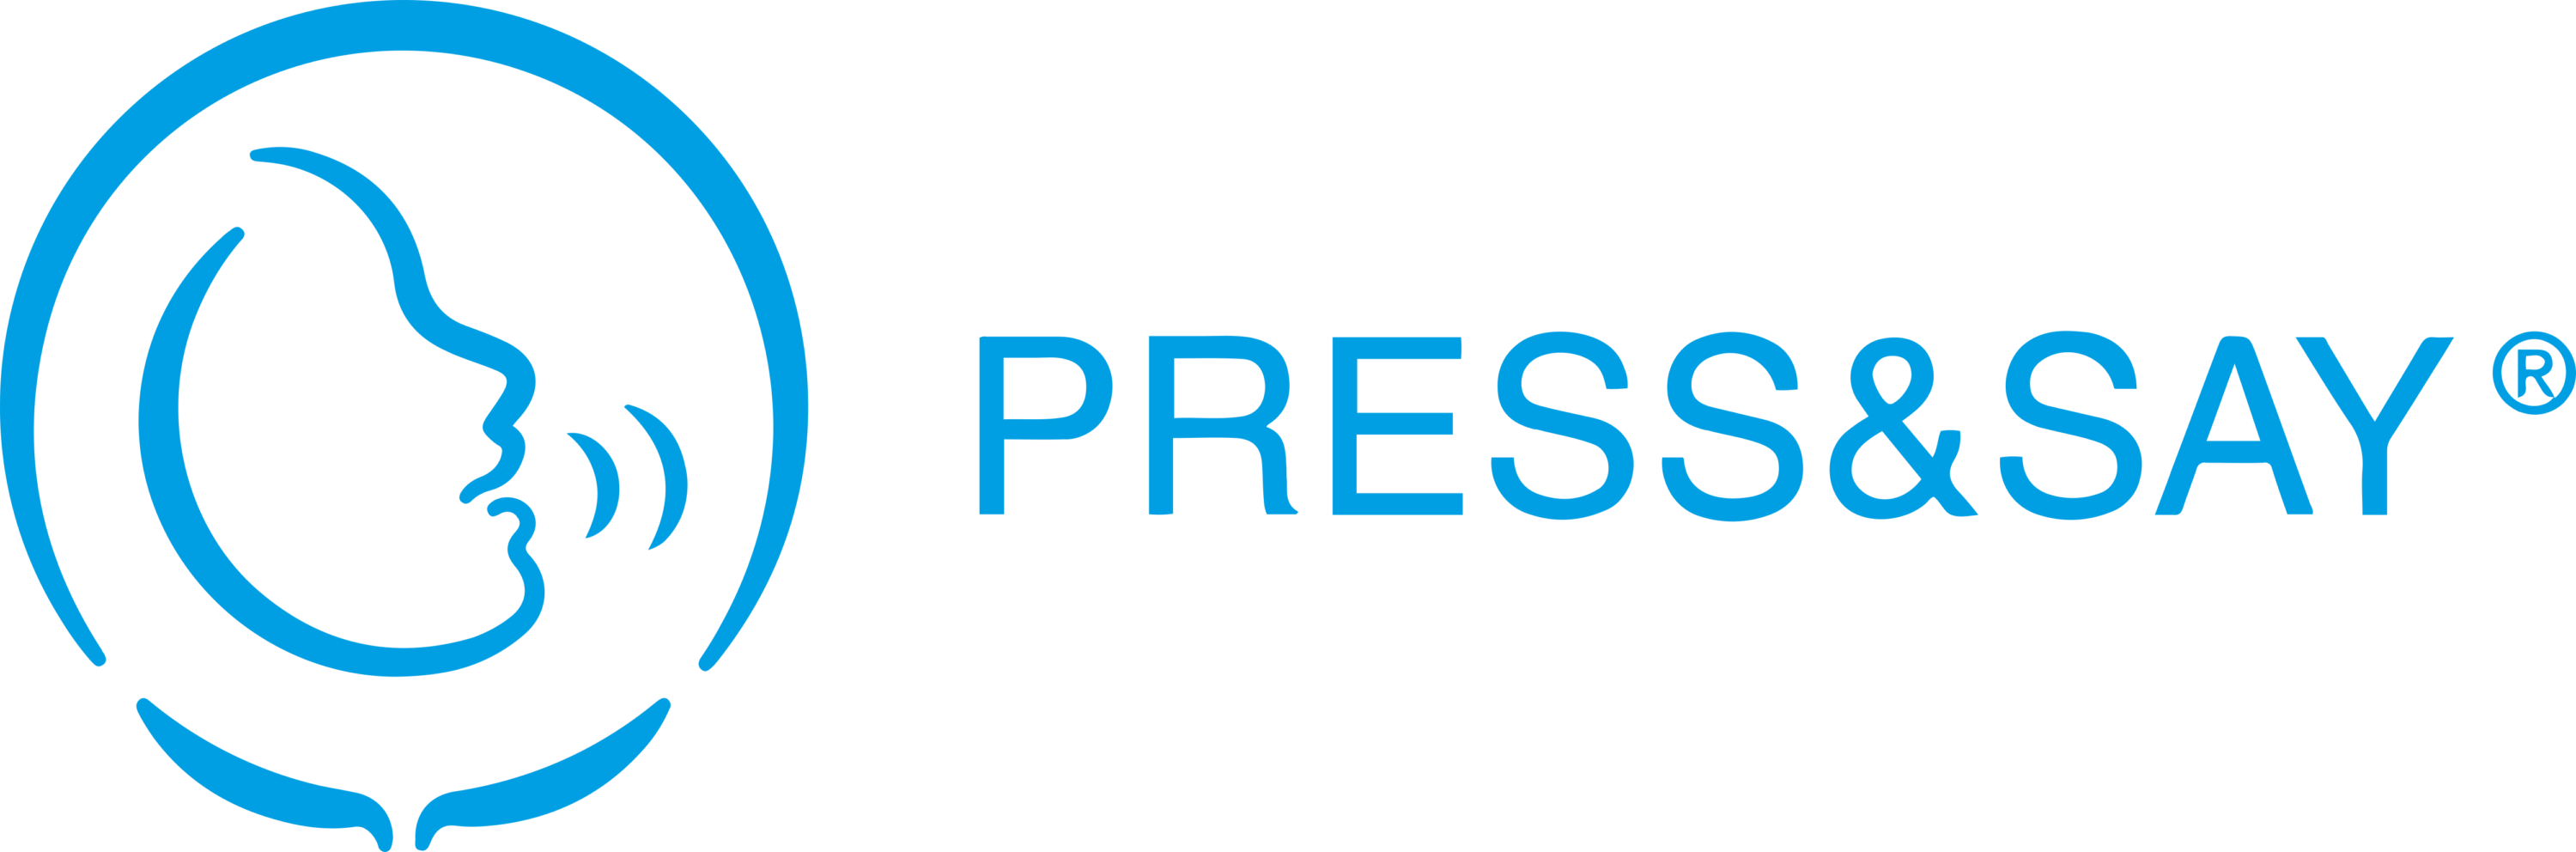 Press & Say Logo